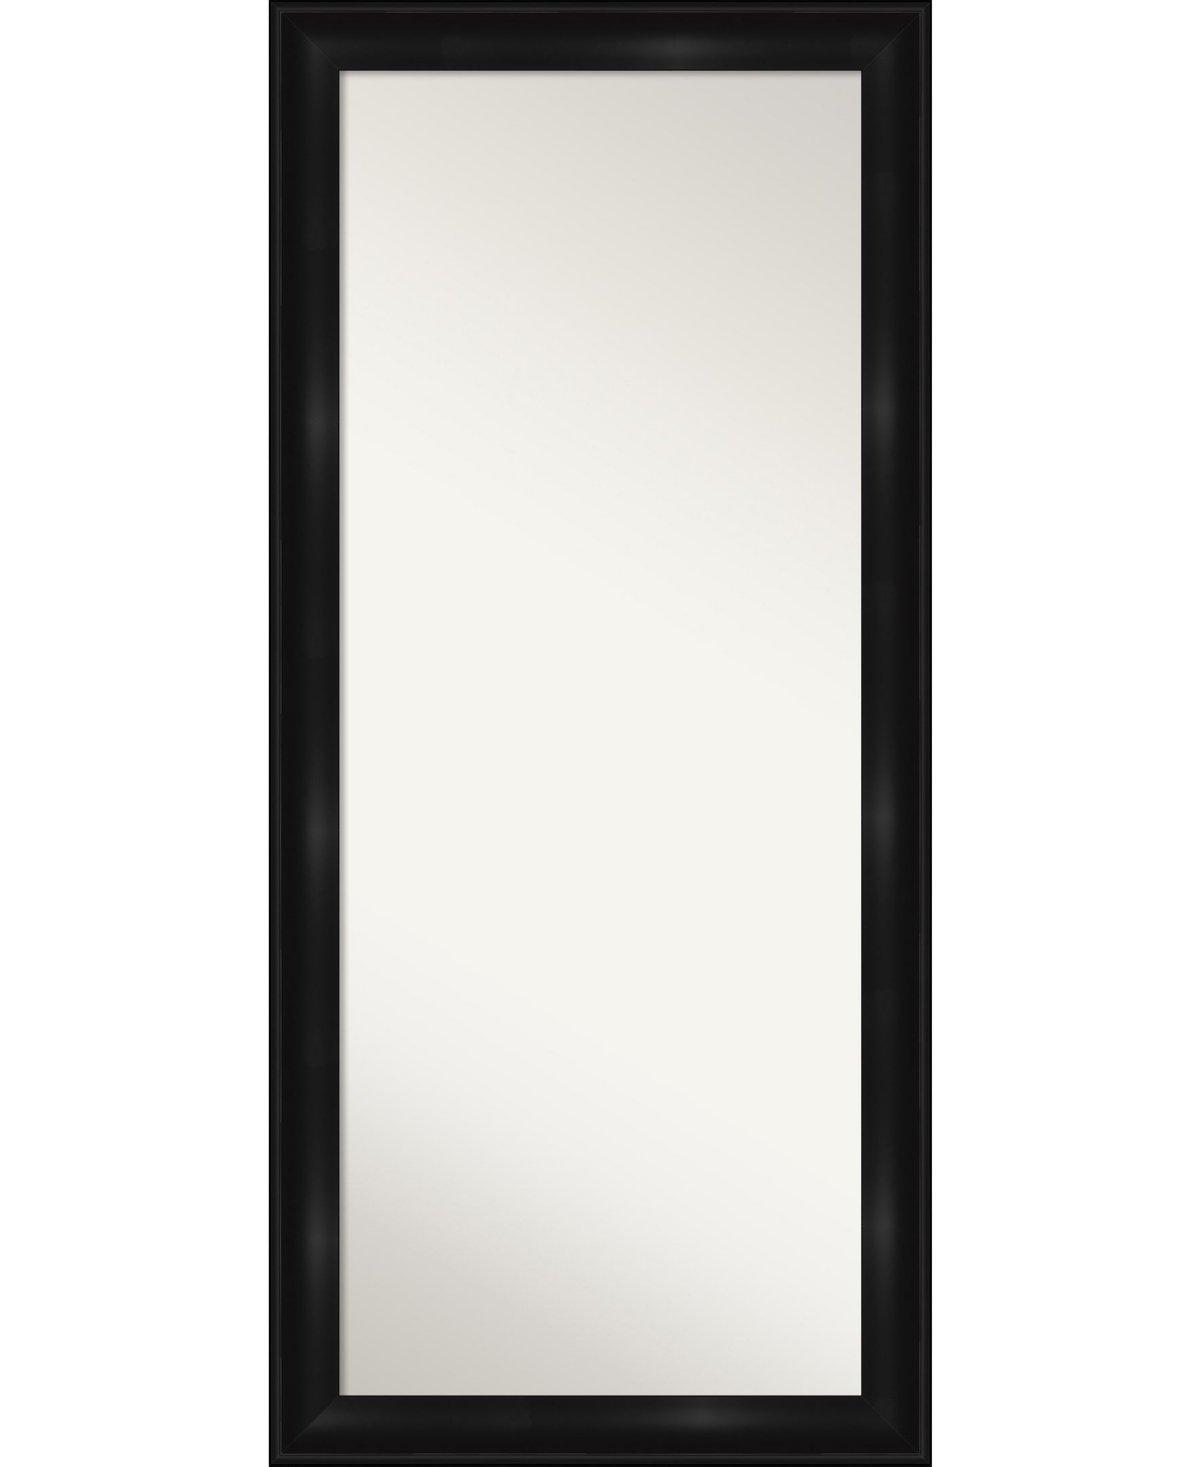 Grand Framed Floor/Leaner Full Length Mirror, 29.75" x 65.75" - Black